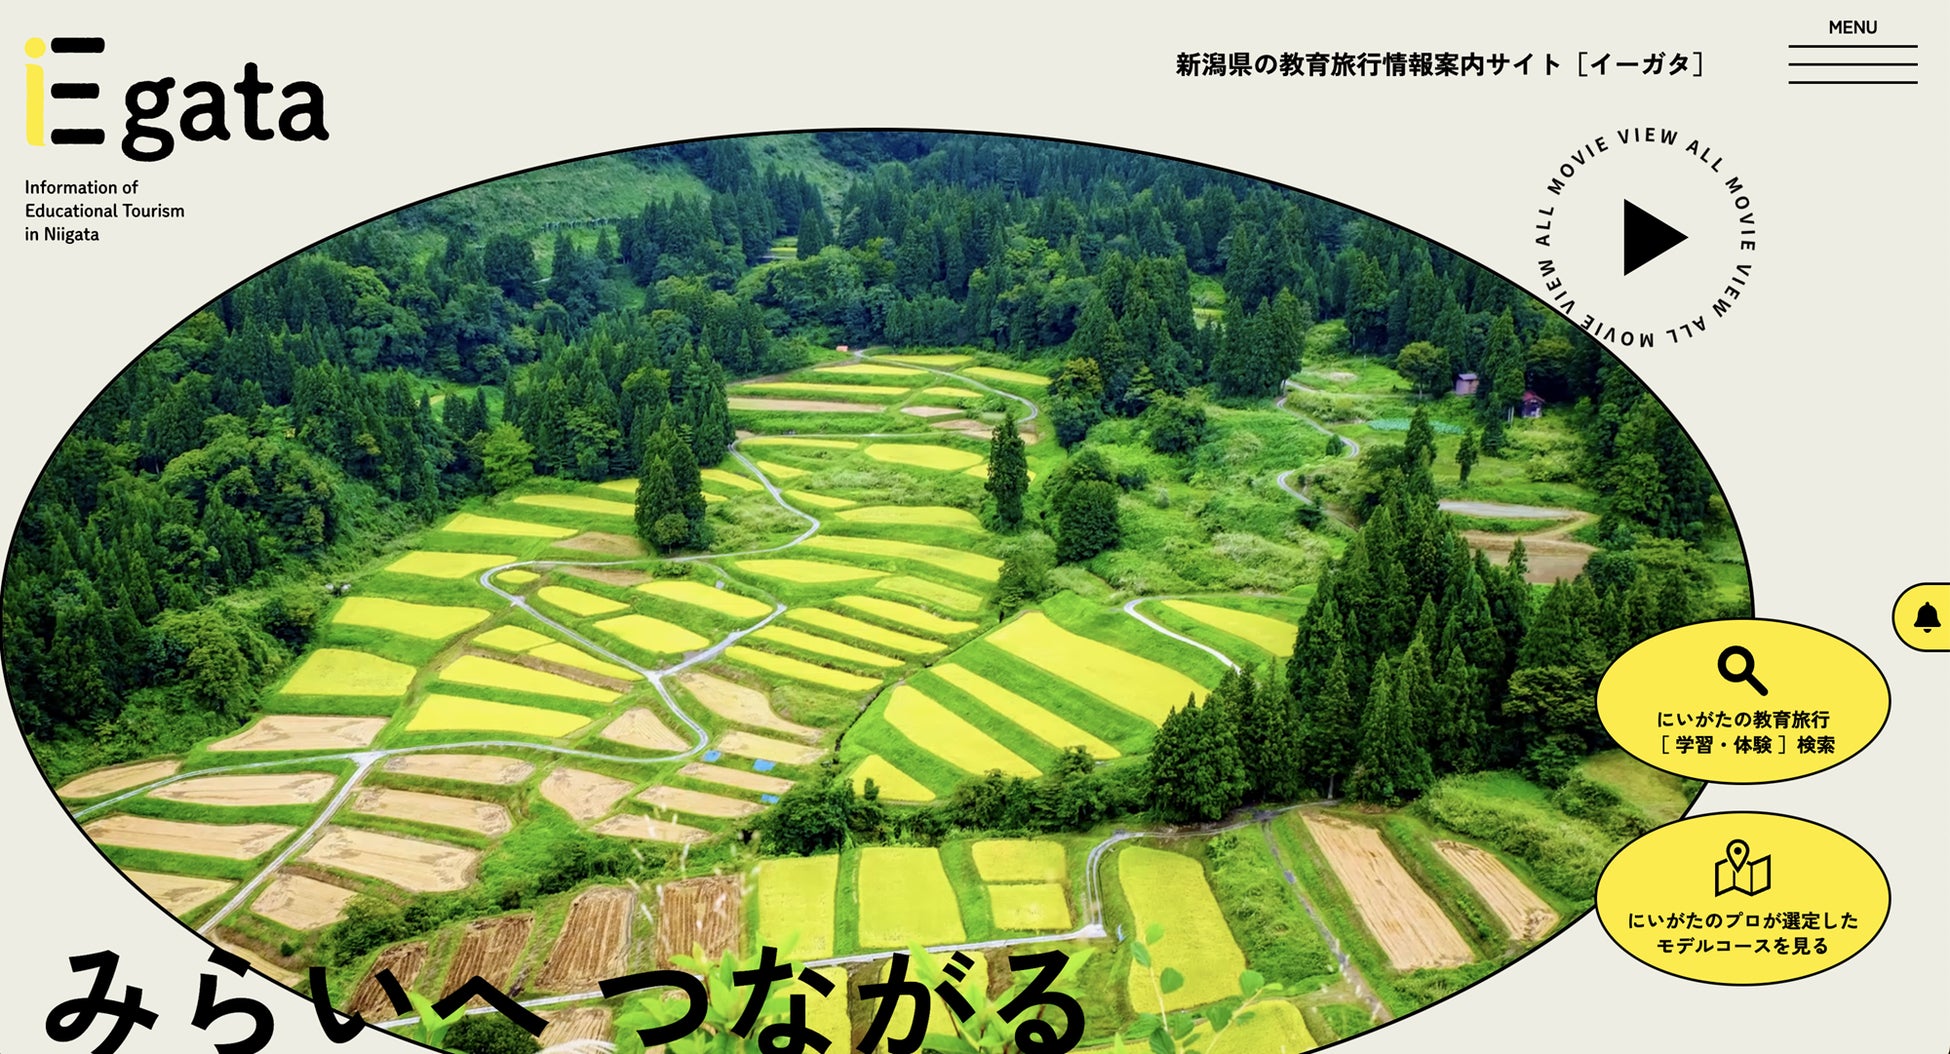 新潟県の教育旅行情報案内サイト『Egata』［イーガタ］公開しました